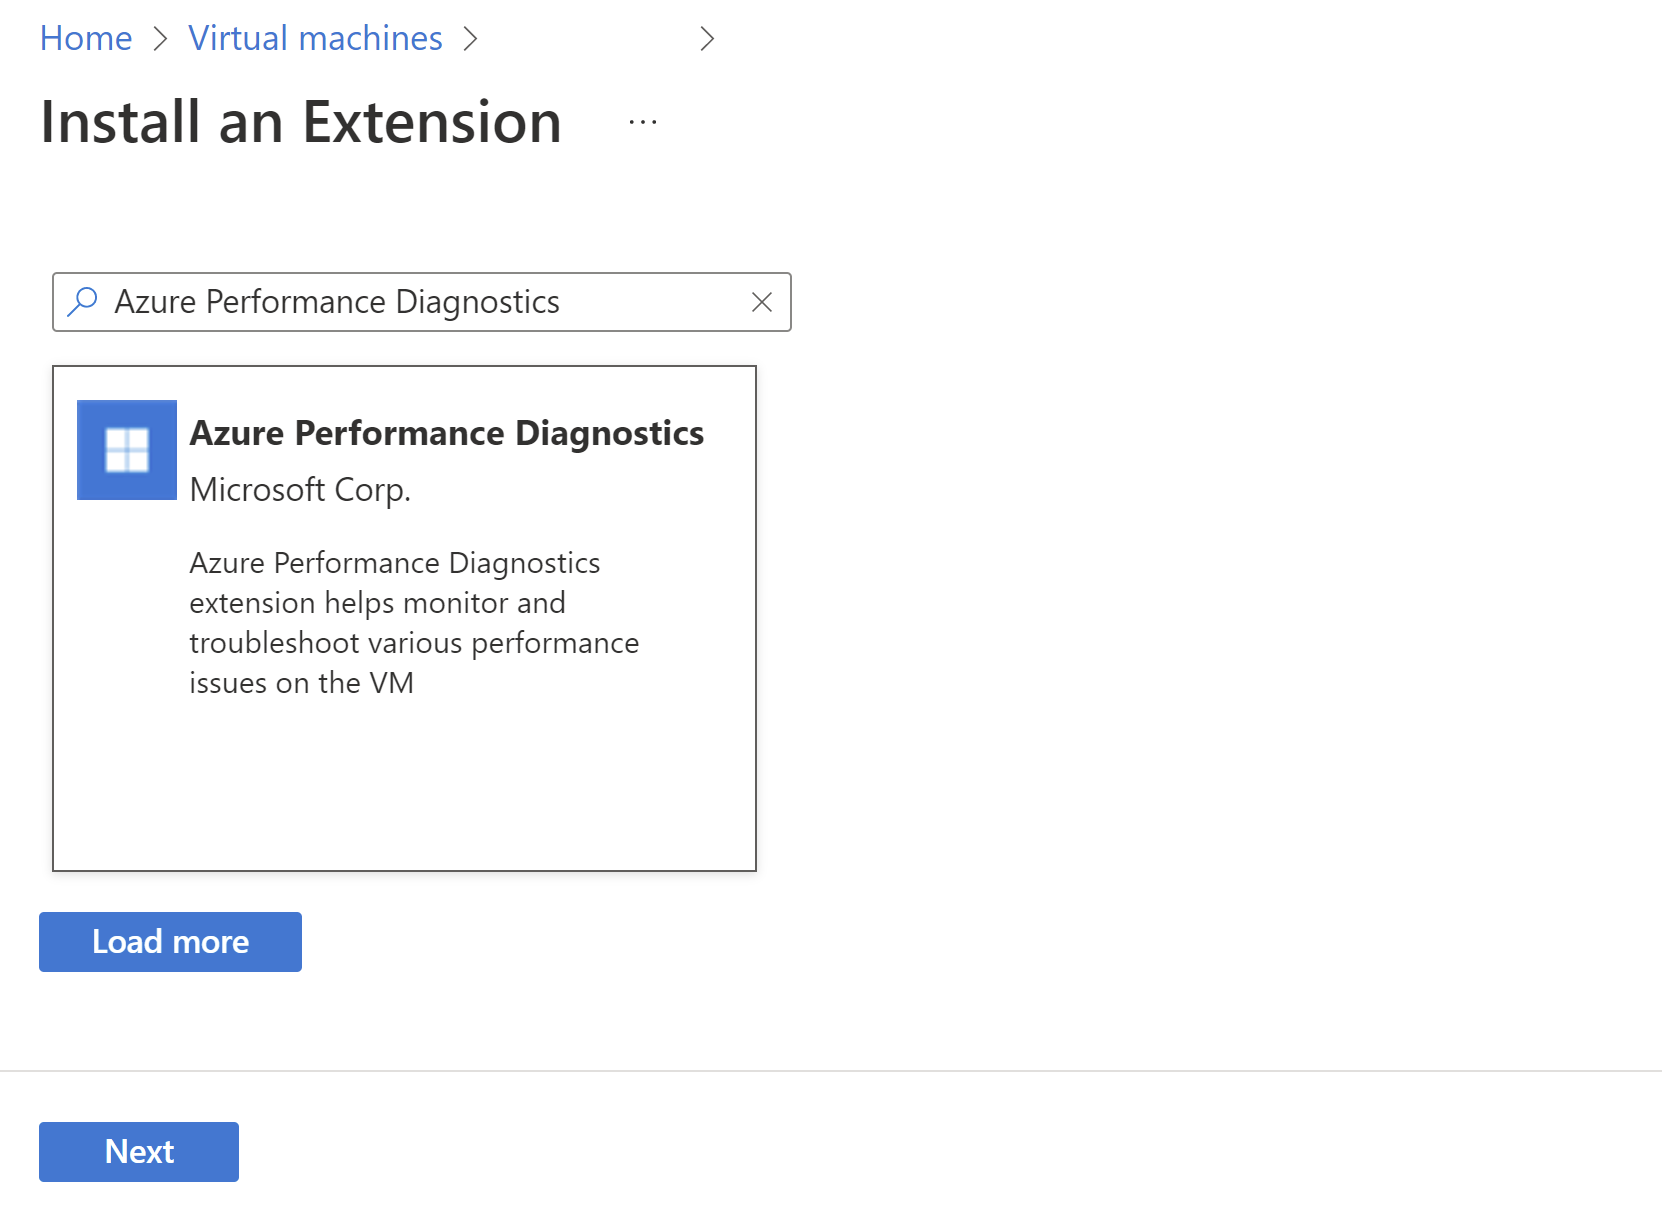 Captura de tela da tela Novo recurso, com o Diagnóstico de Desempenho do Azure realçado.